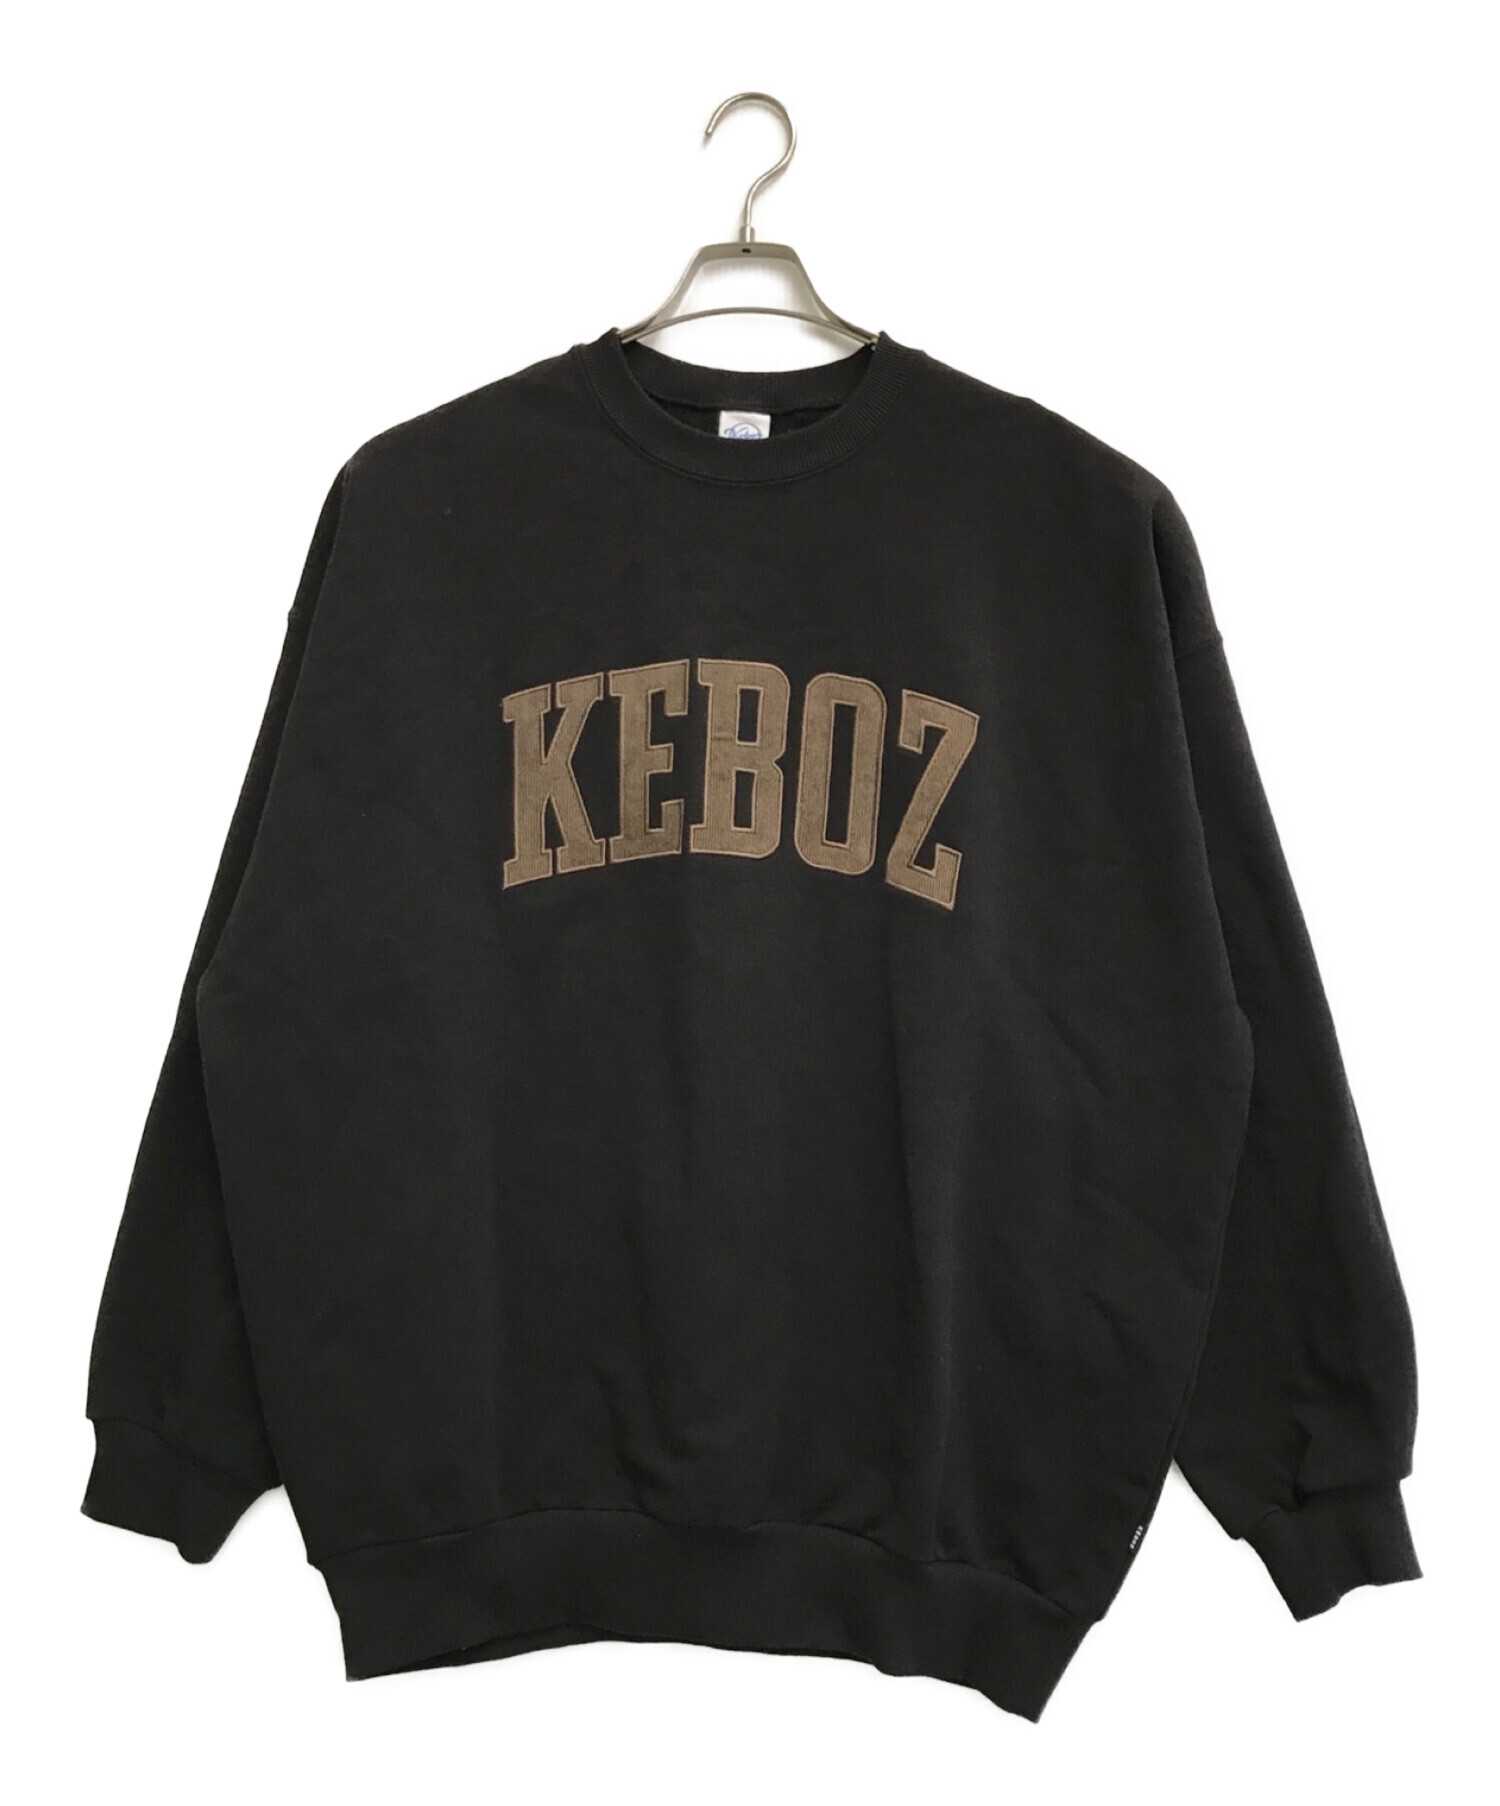 中古・古着通販】KEBOZ (ケボズ) スウェット ブラック サイズ:XL 